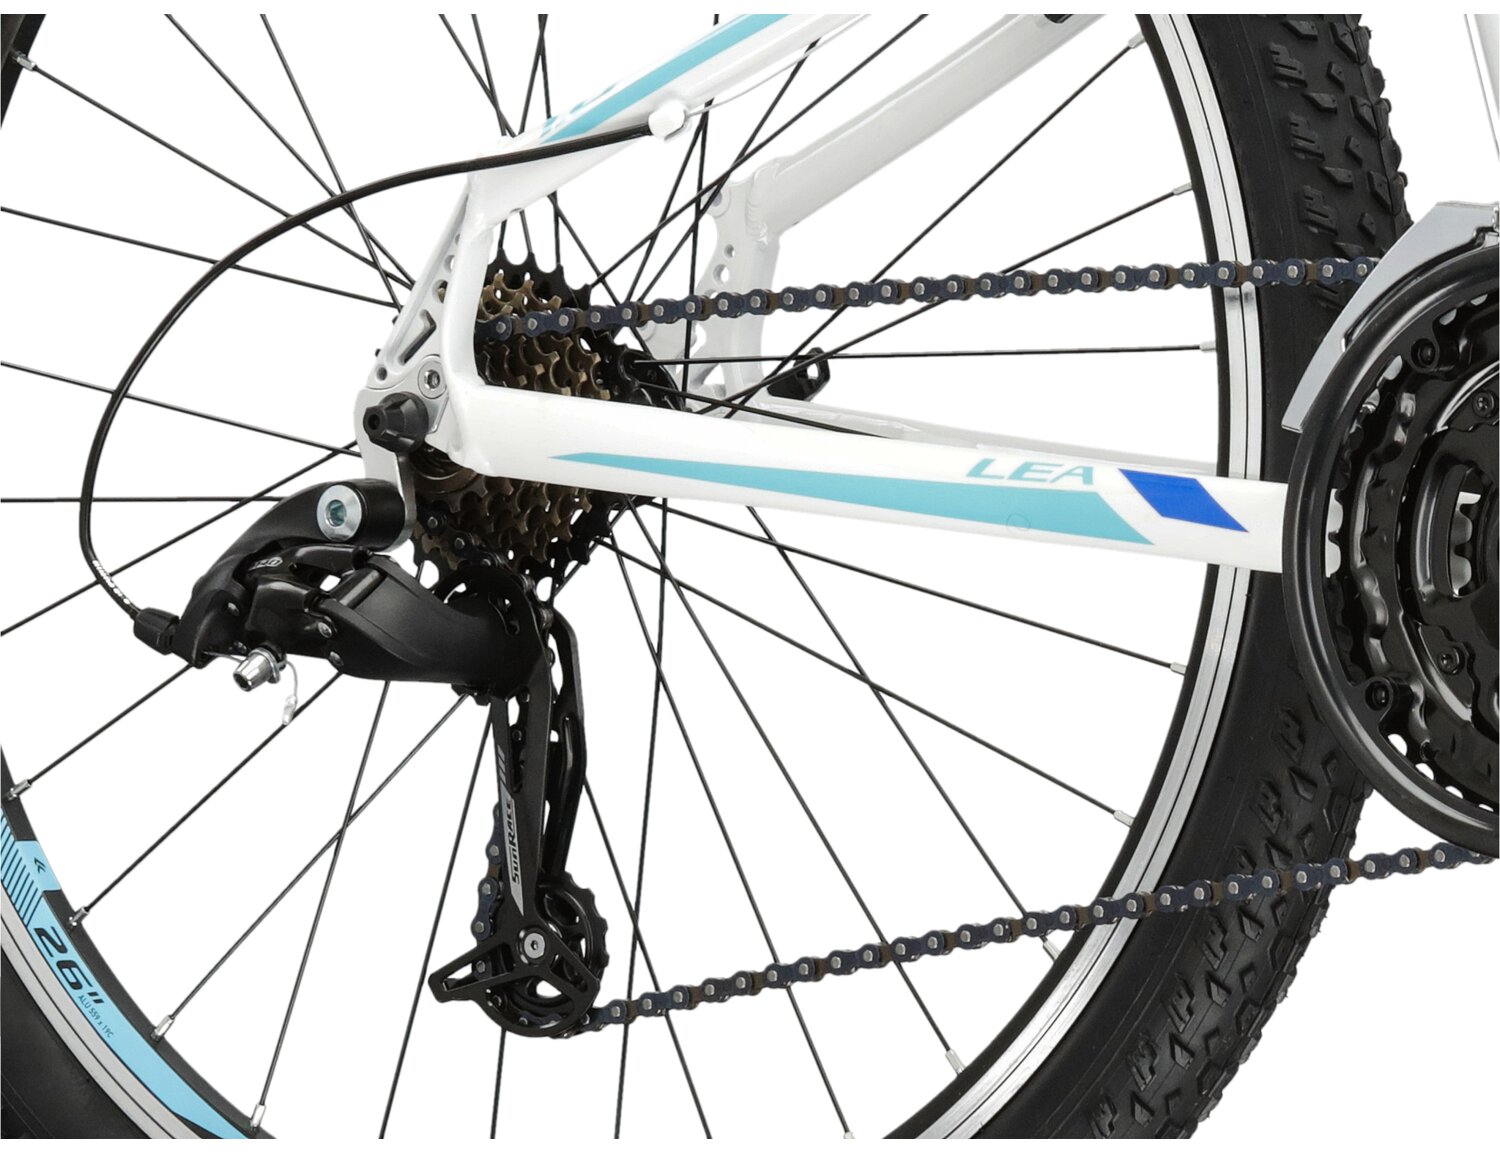  Tylna siedmiobiegowa przerzutka sunrace RDM41 oraz hamulce v-brake w damskim rowerze górskim MTB Woman KROSS Lea 1.0 SR